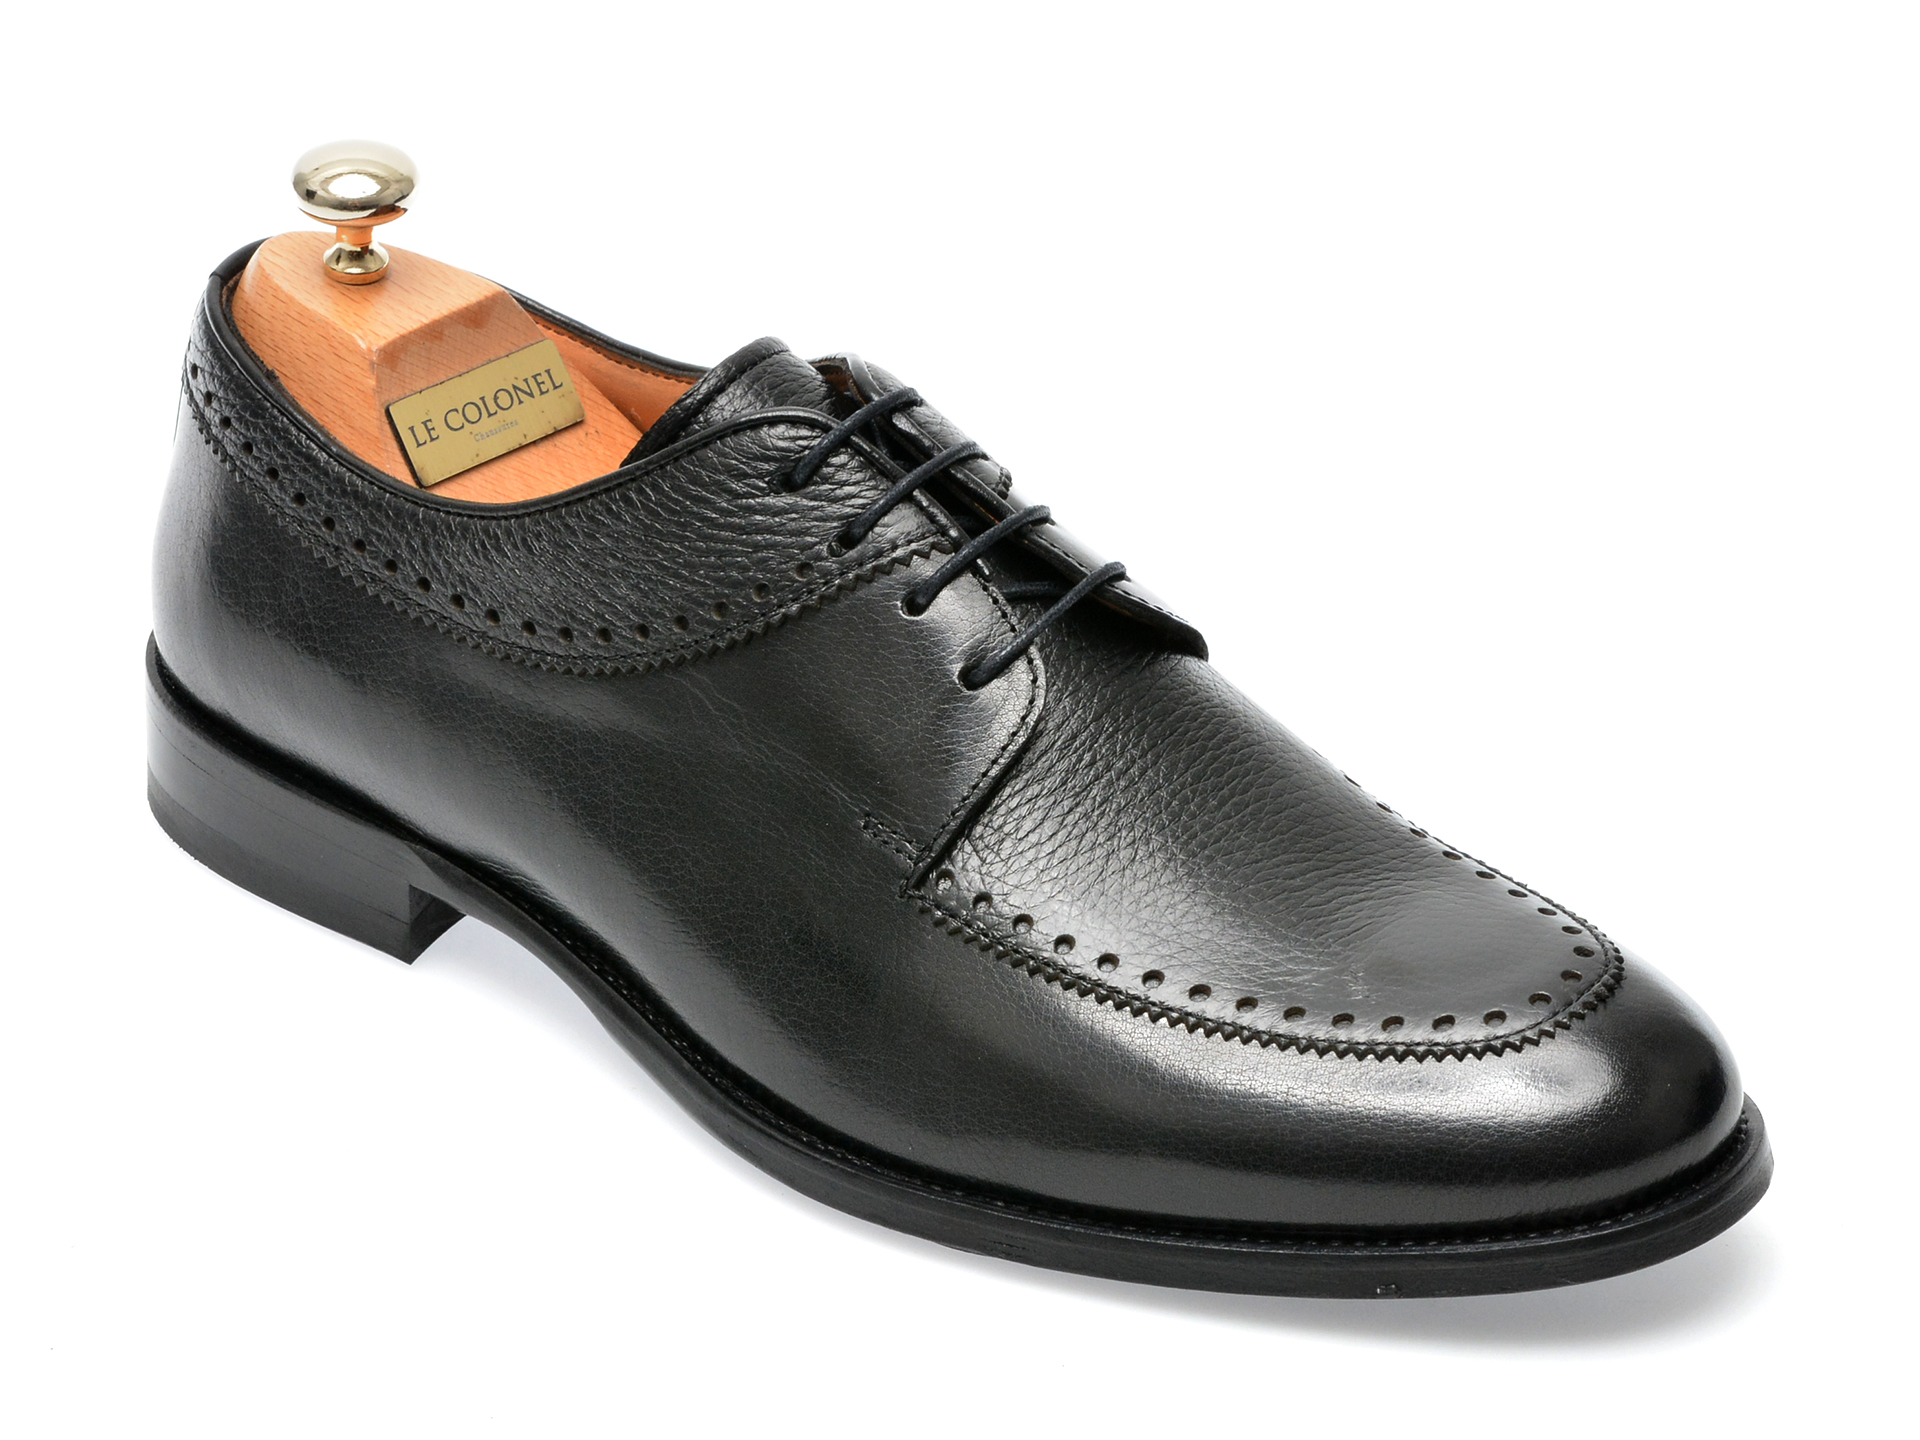 Pantofi LE COLONEL negri, 45266, din piele naturala Le Colonel